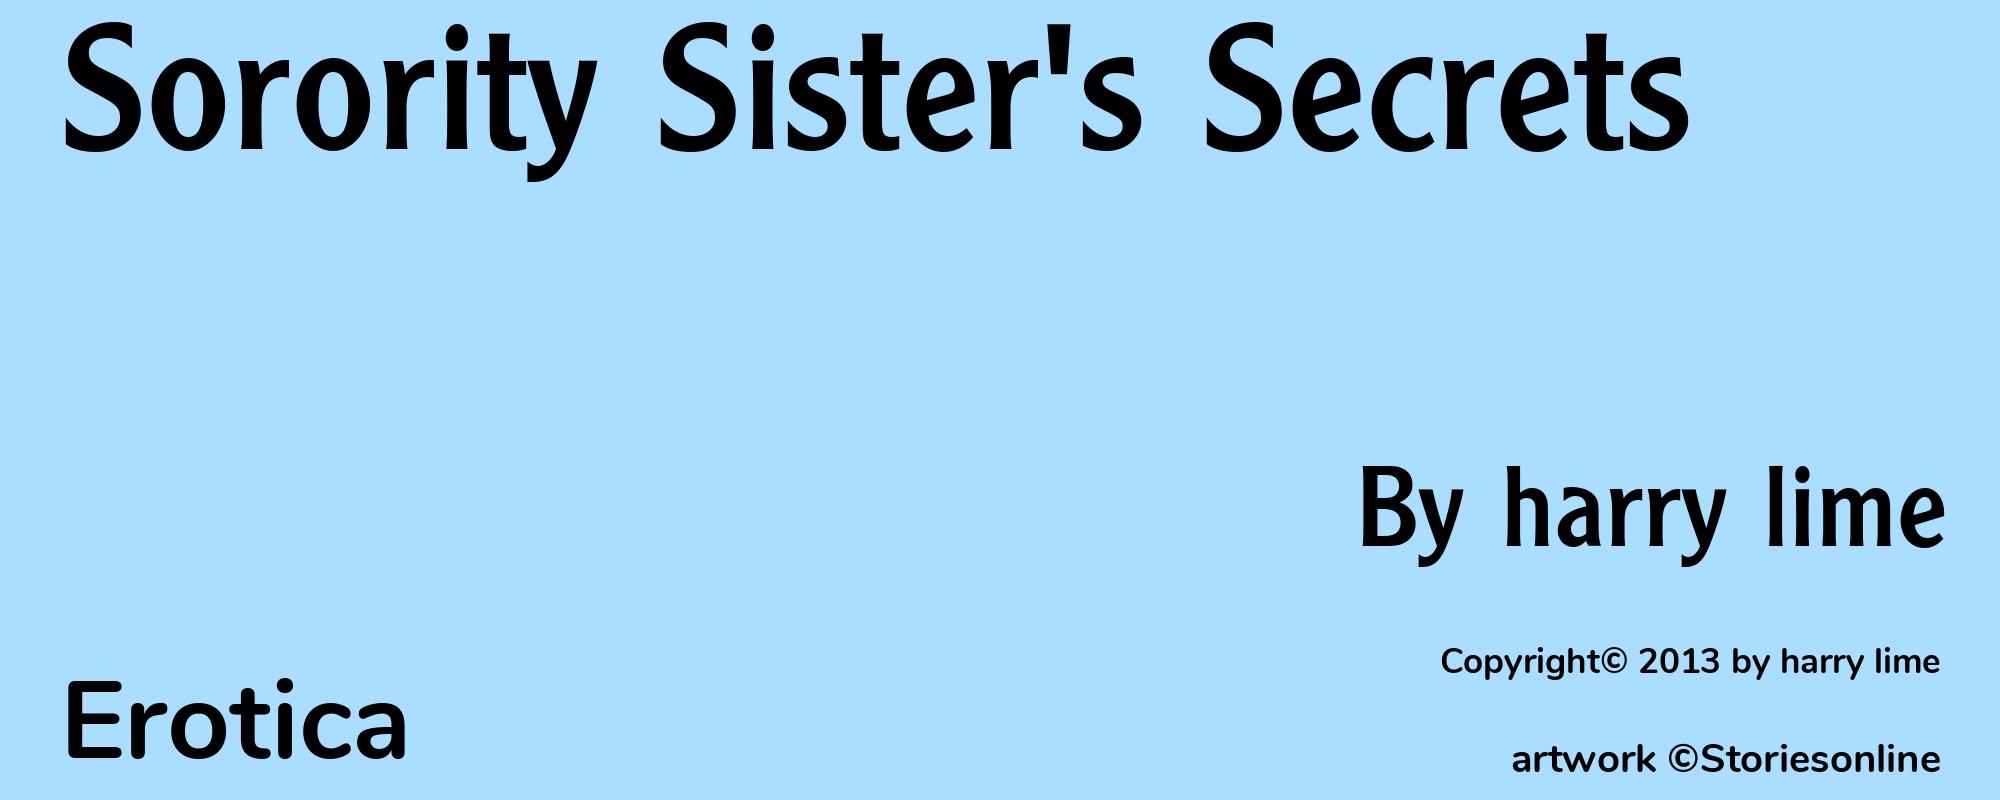 Sorority Sister's Secrets - Cover